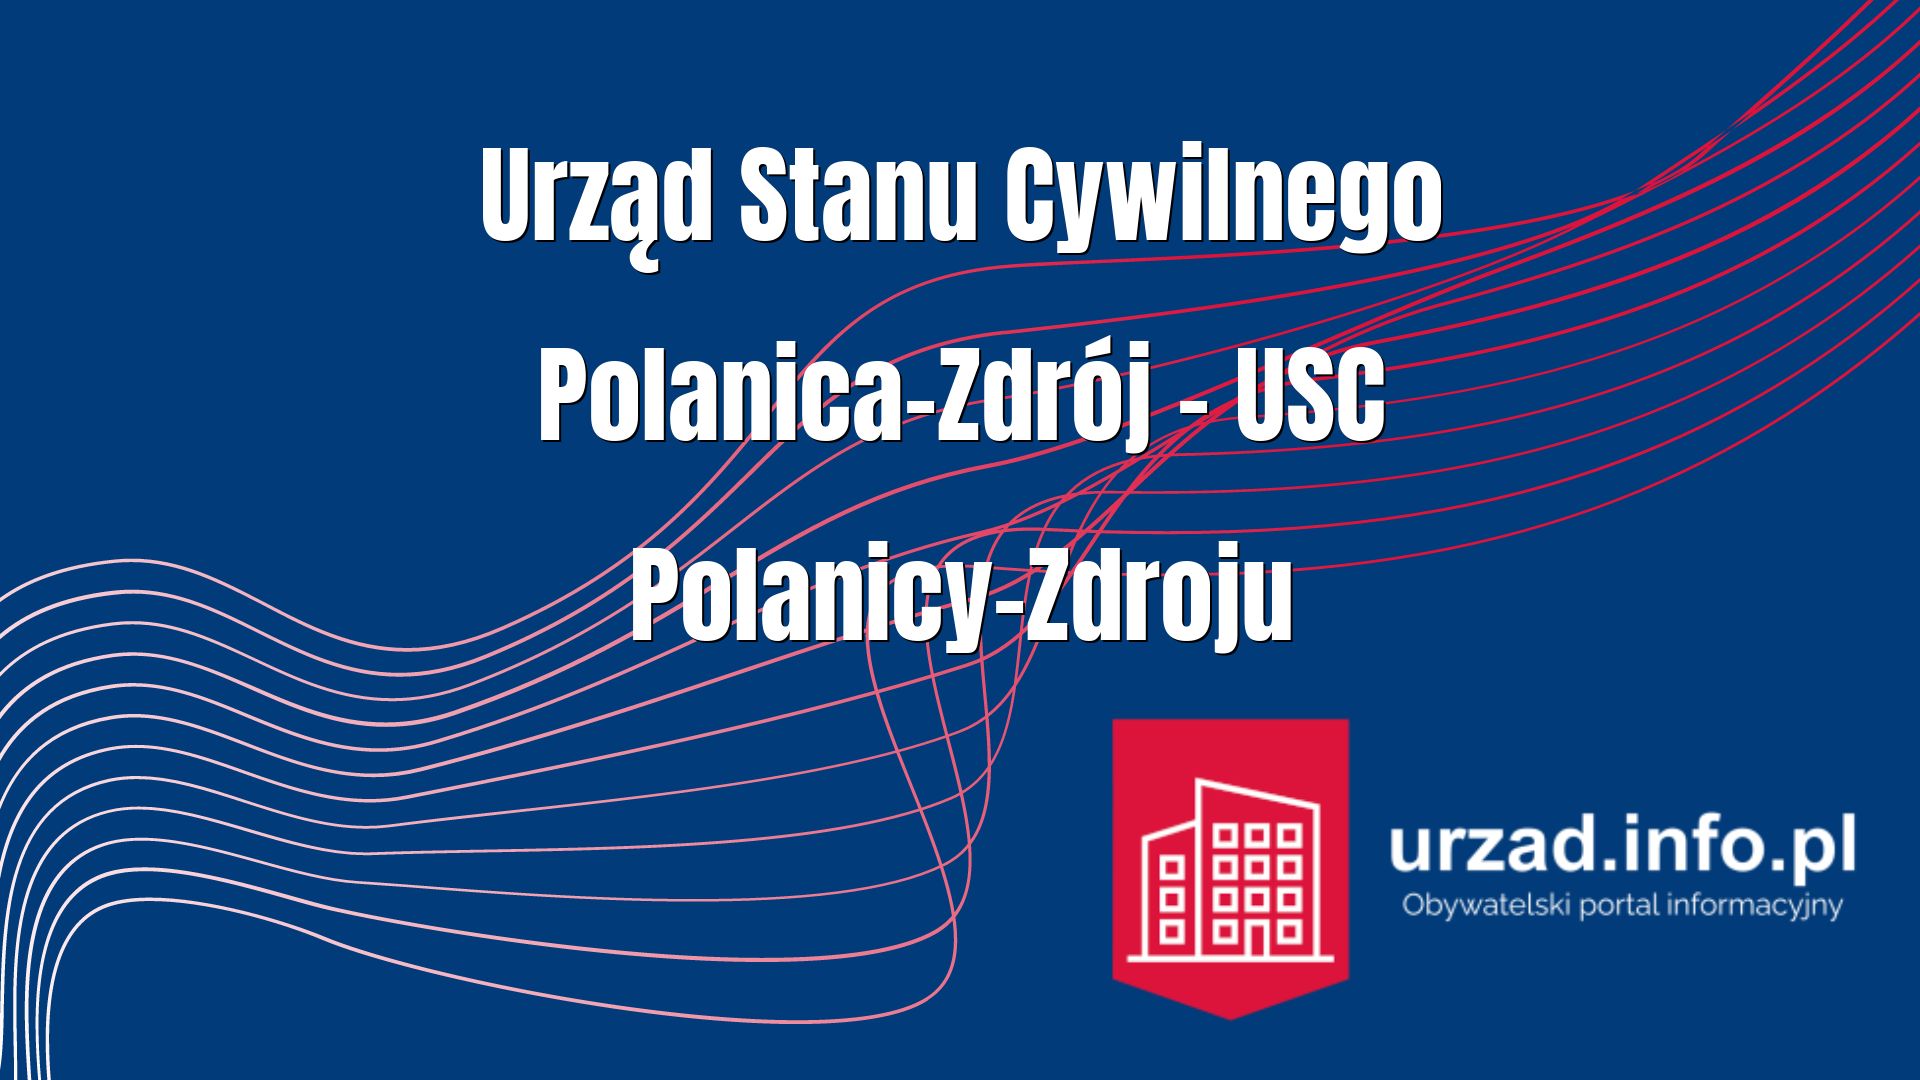 Urząd Stanu Cywilnego Polanica-Zdrój – USC Polanicy-Zdroju